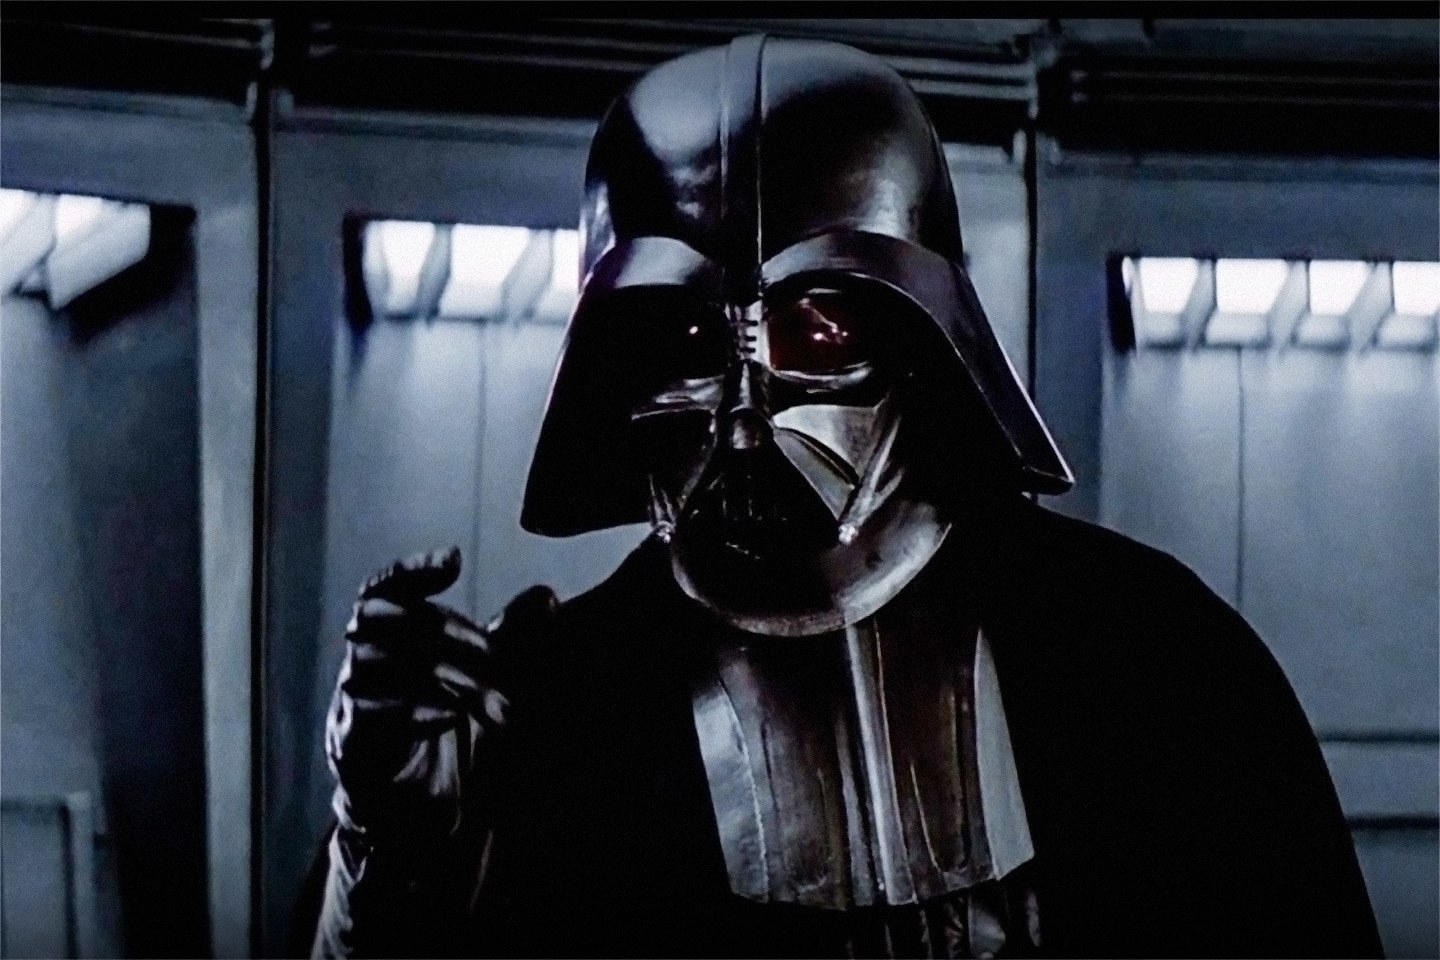 Τύπος διέρρηξε εταιρεία παραγωγής ταινιών για να κλέψει το κράνος του Darth Vader (βίντεο)